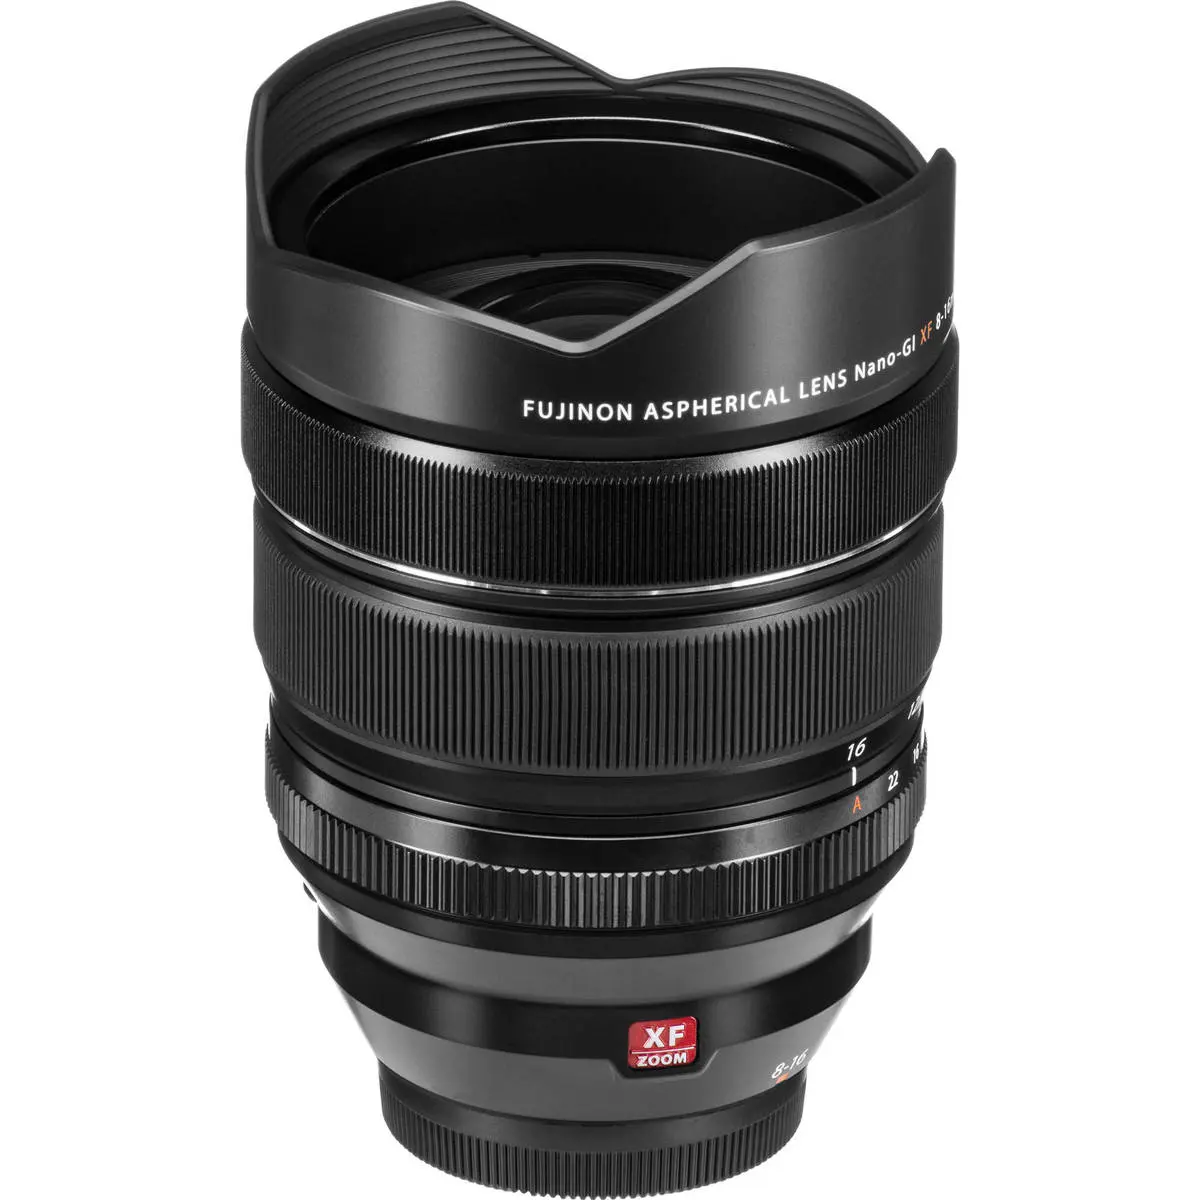 7. Fujifilm FUJINON XF 8-16mm F2.8 R LM WR Lens